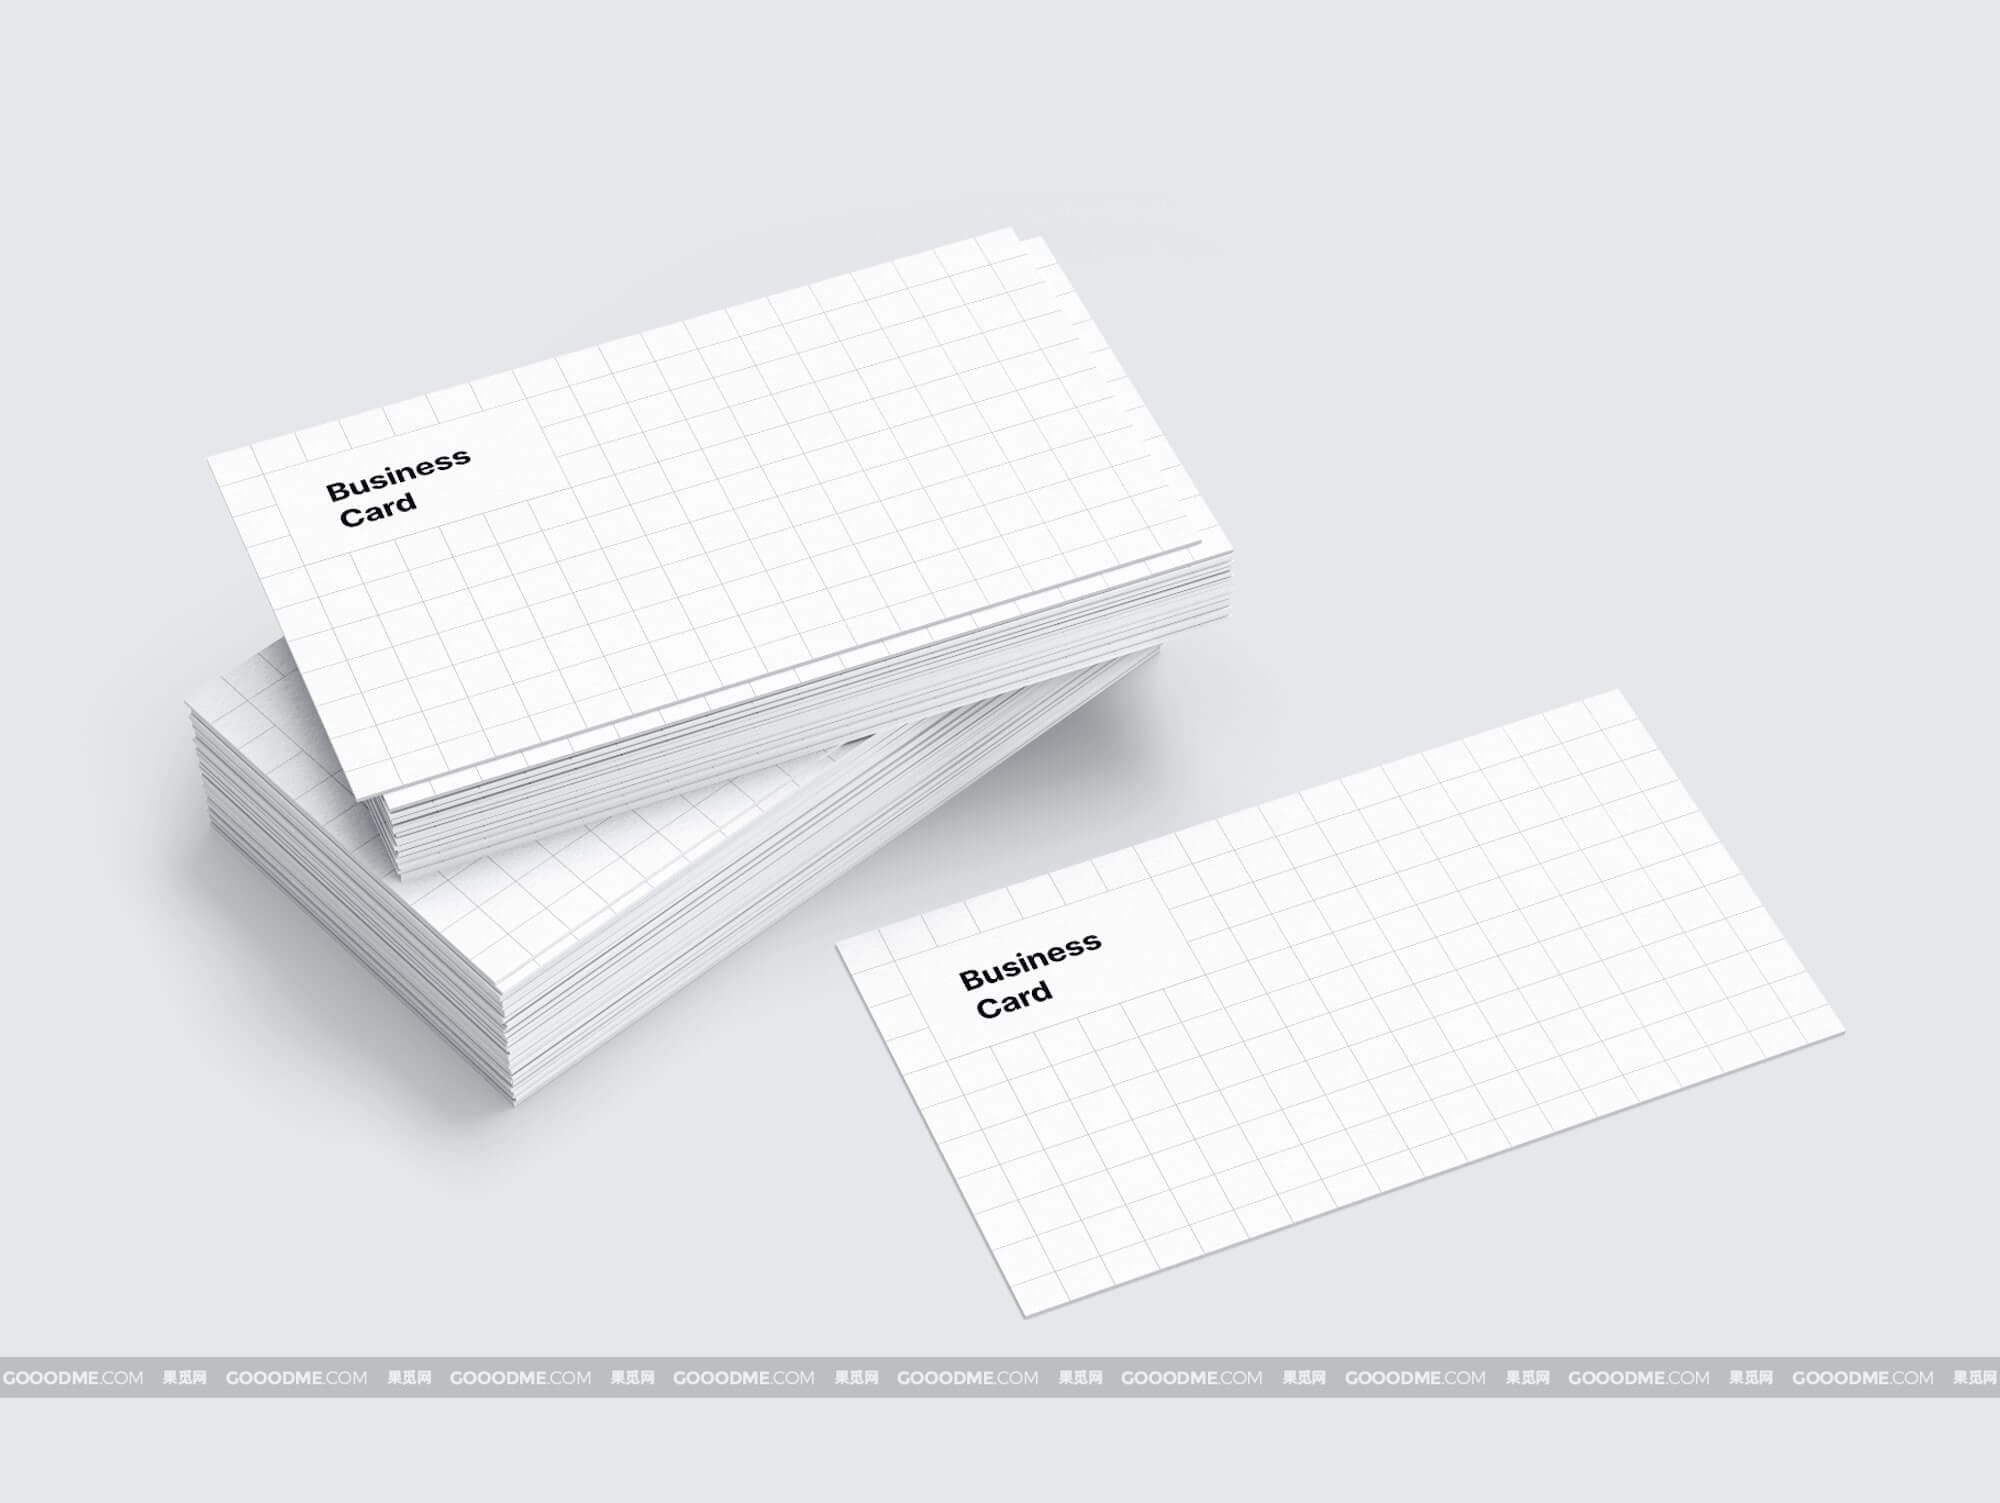 366 可商用堆叠品牌Vi设计名片卡片模型 PSD样机素材 Stacked Business Cards Mockup PSD